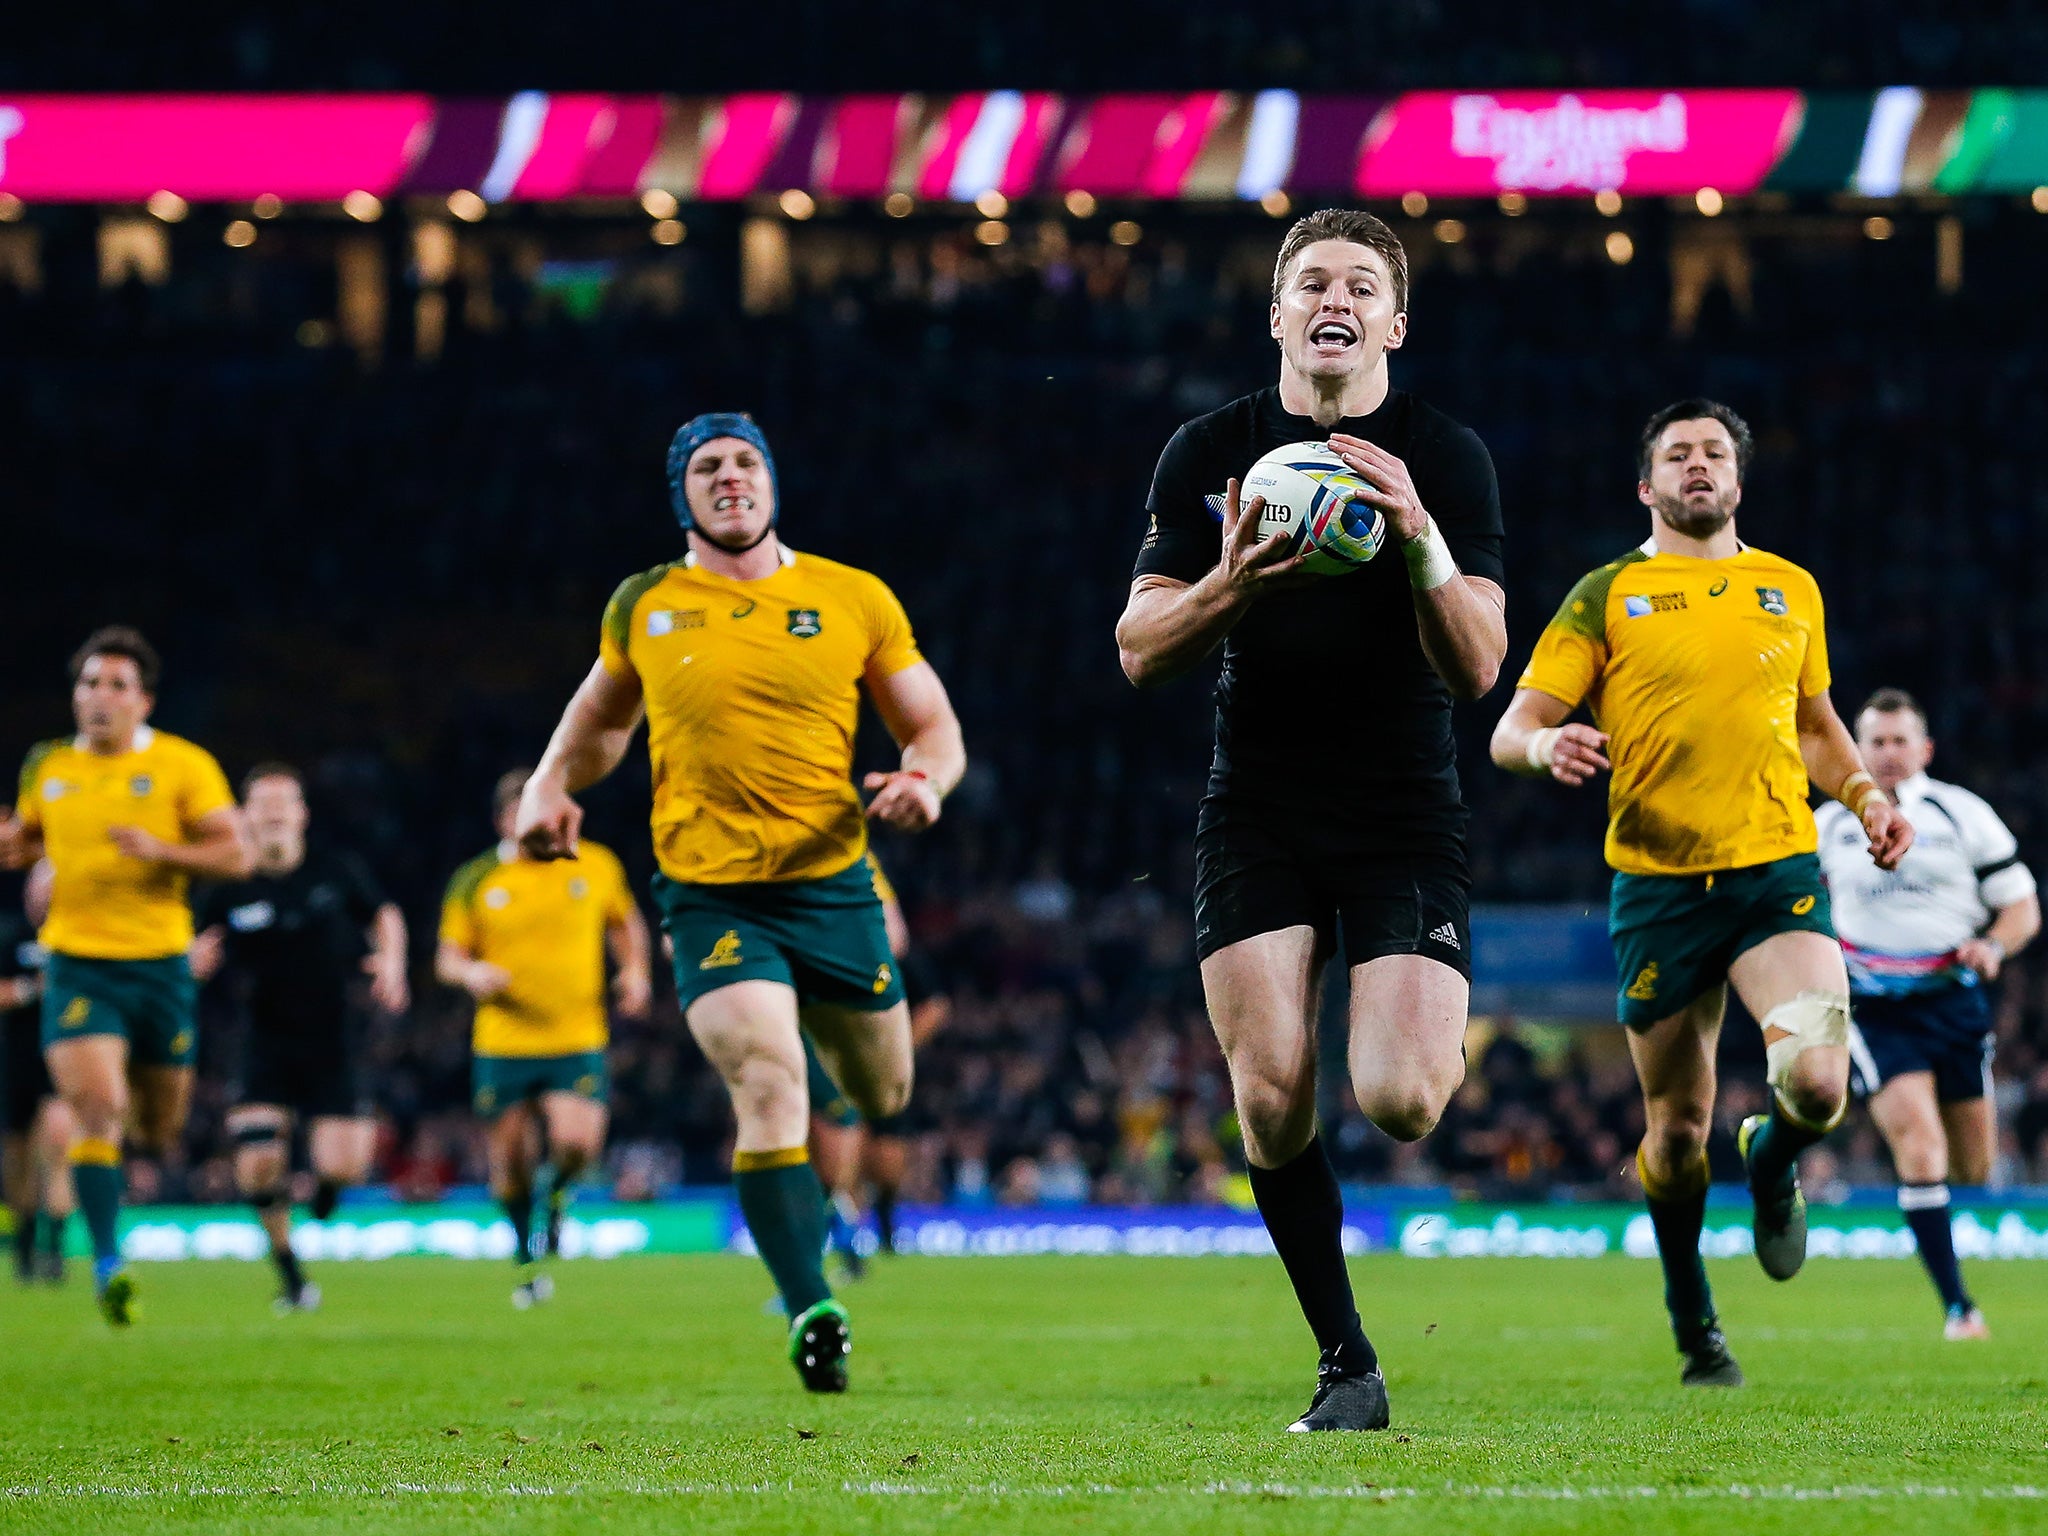 Beauden Barrett scores New Zealand’s third try